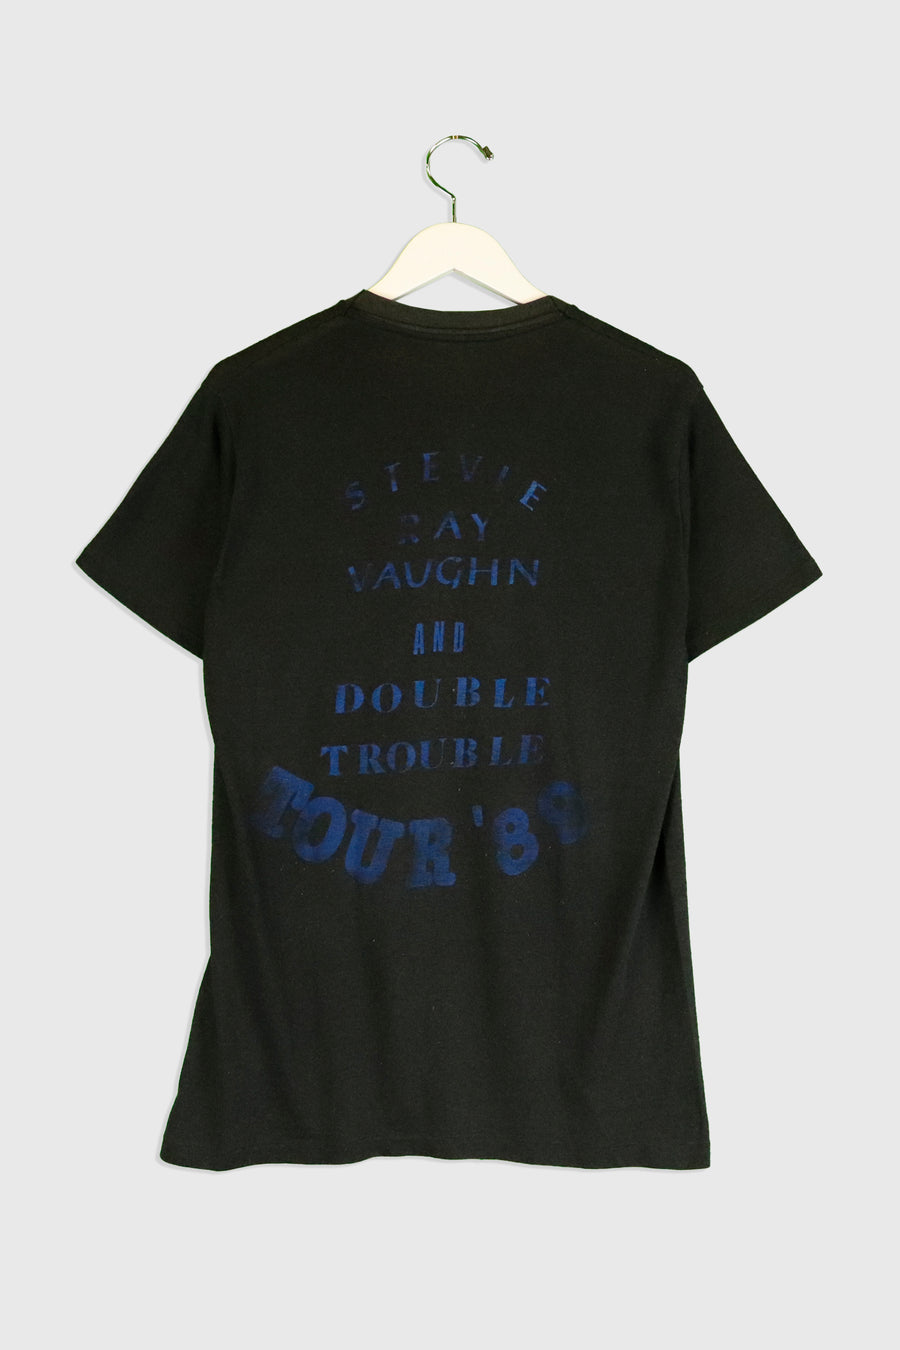 Vintage 1989 Stevie Ray Vaughn Double Trouble Faded Tour T Shirt Sz L